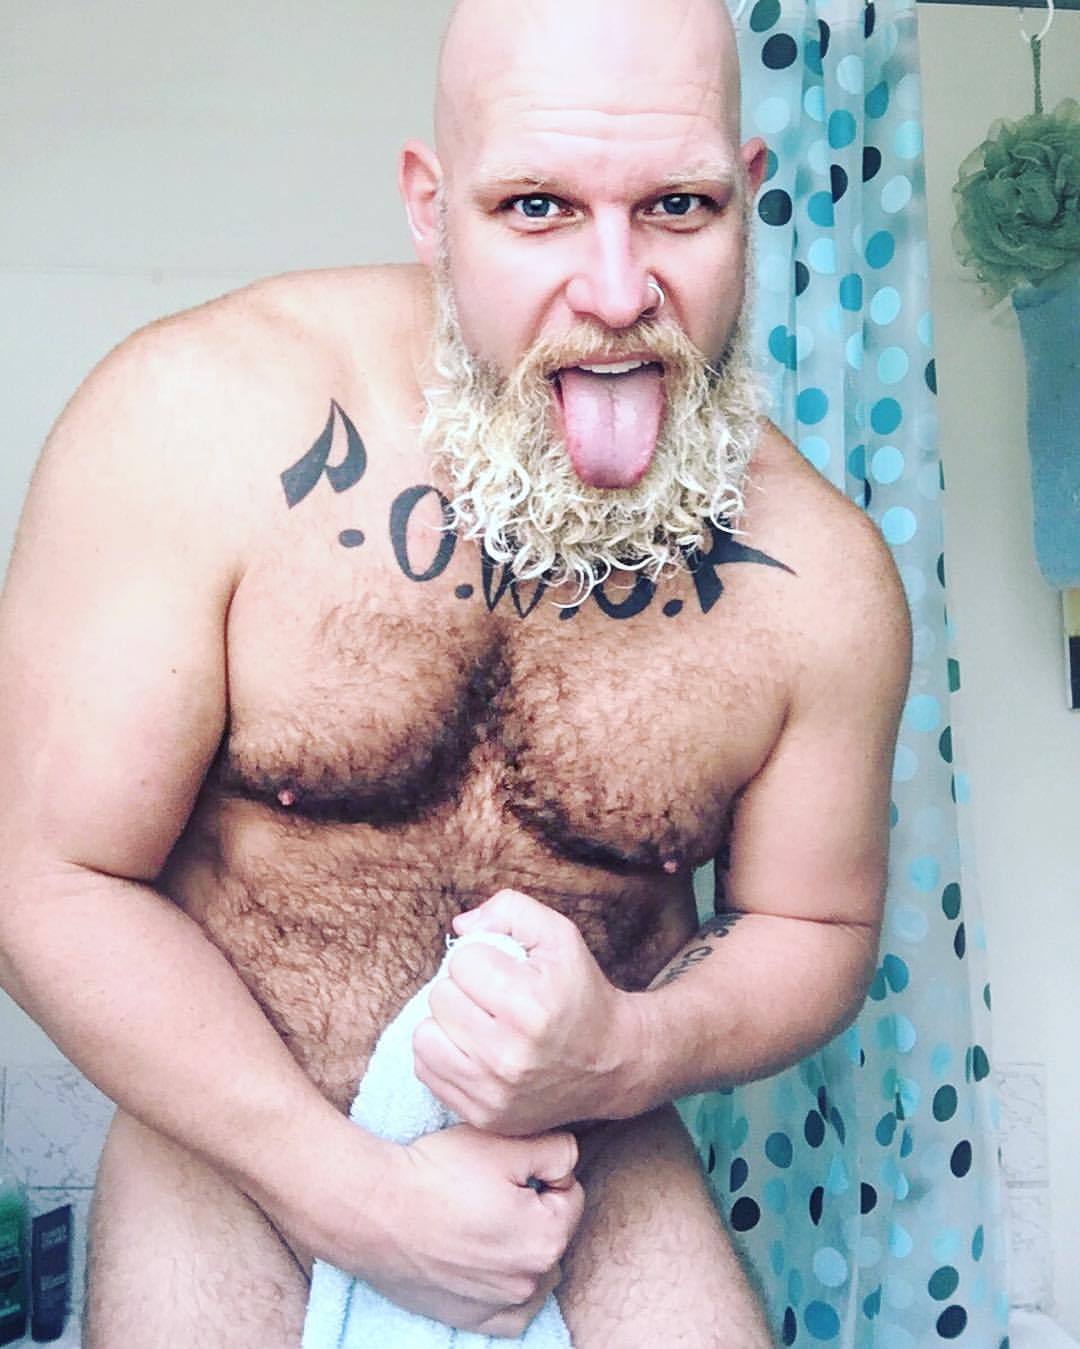 jdchard:  That after shower fresh feeling #shower #morning #fresh #beardporn #beardhomo